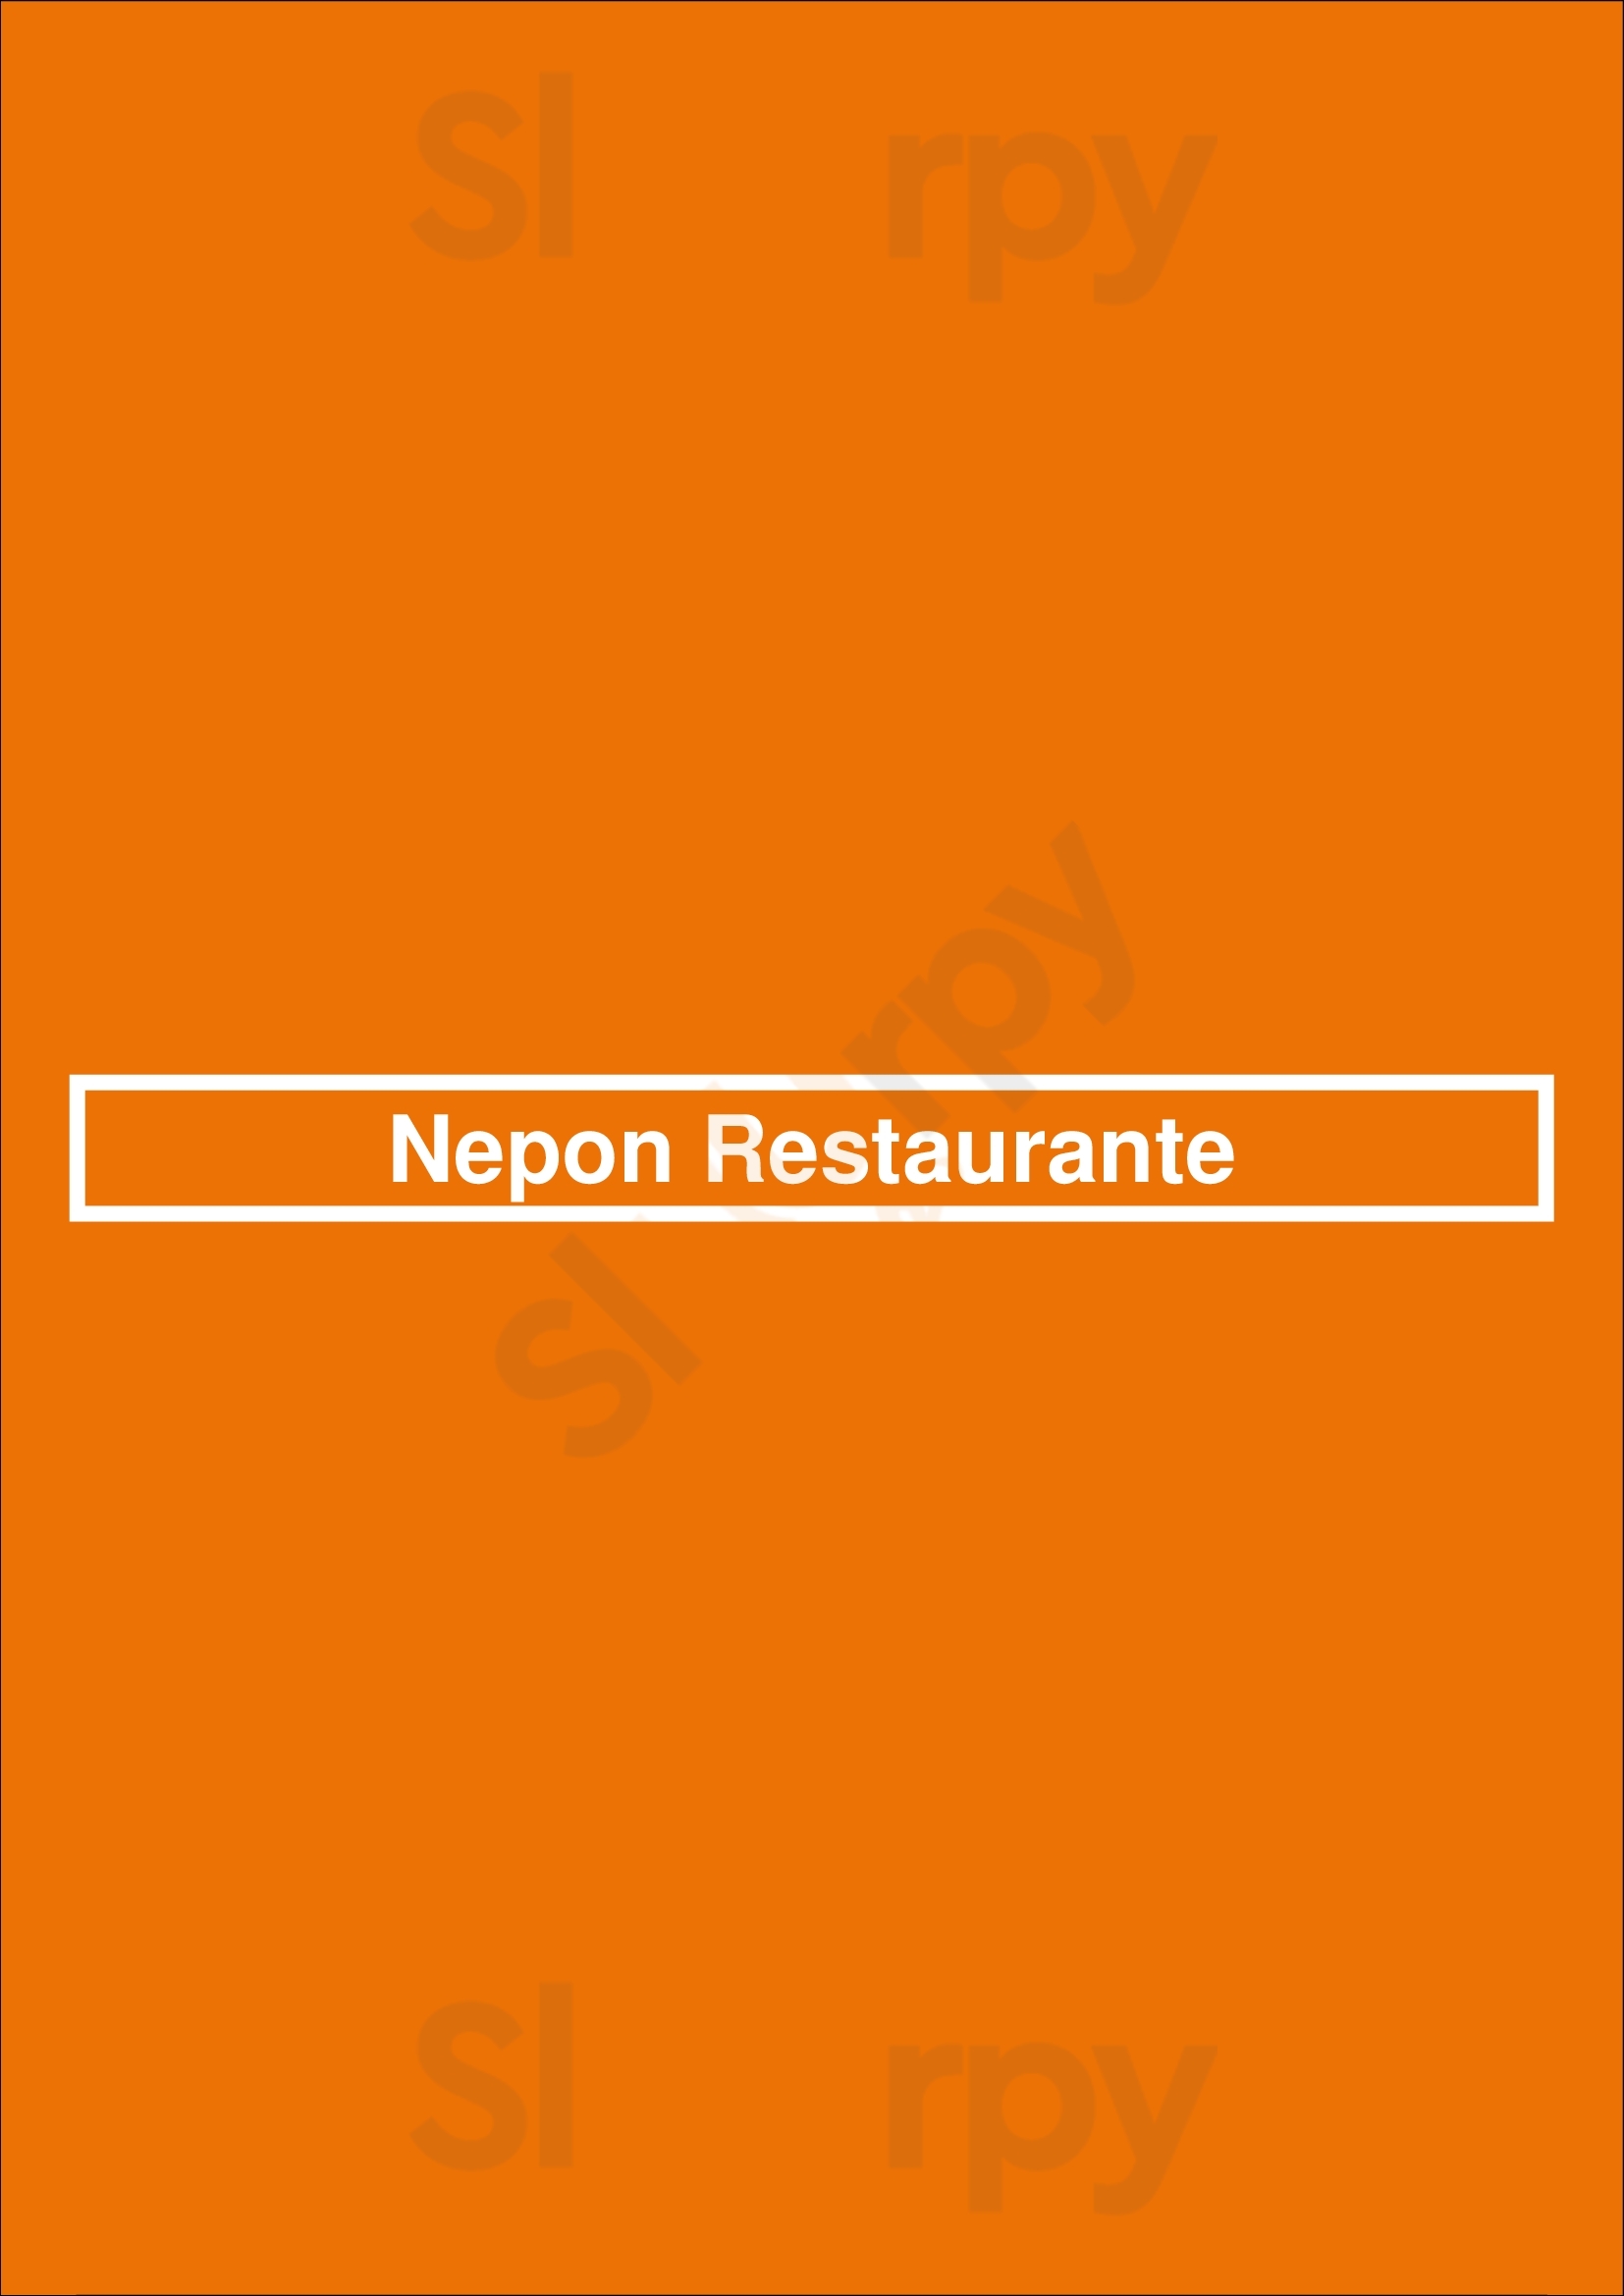 Nepon Restaurante Lisboa Menu - 1